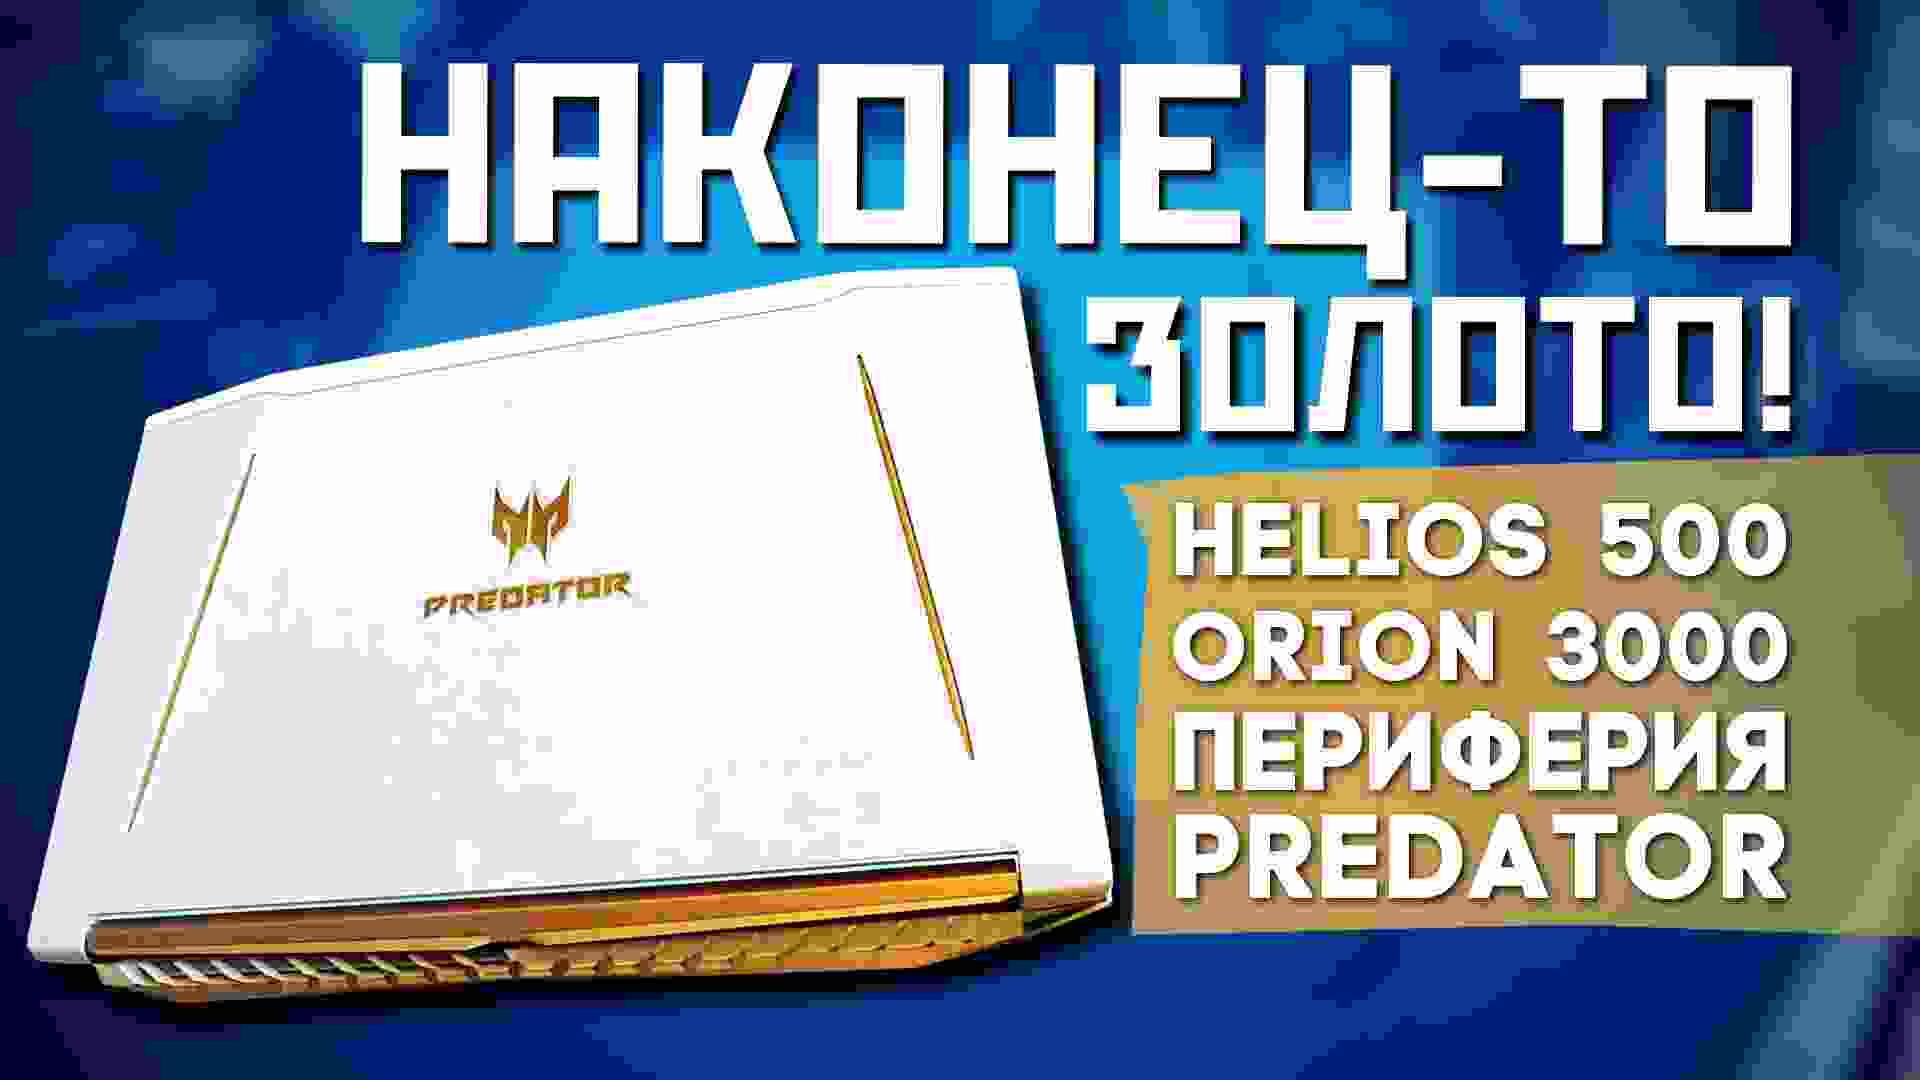 Helios 500, Orion 3000 и периферия Predator – Сёма в Нью-Йорке! ep.2